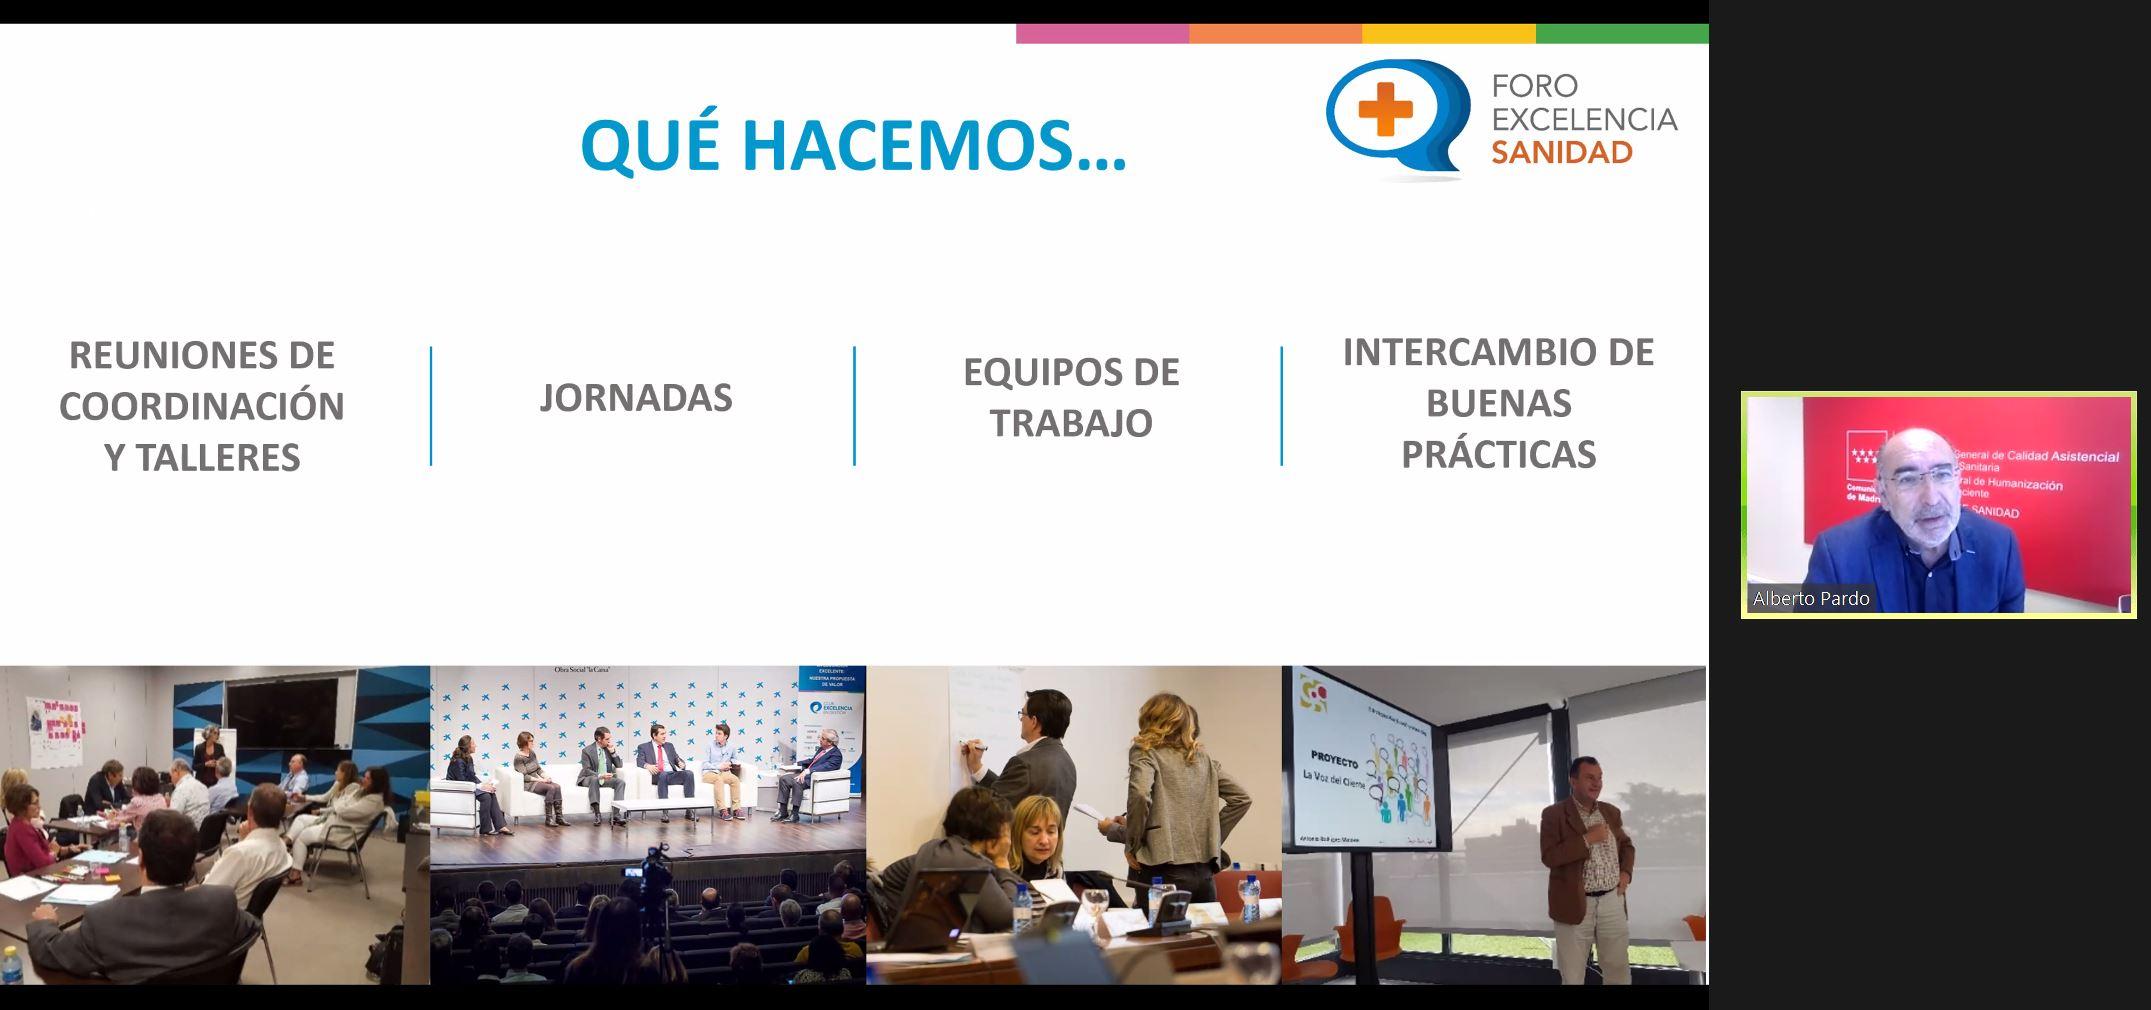 La innovación en Sanidad, nuevos proyectos para un reto permanente - Alberto Pardo